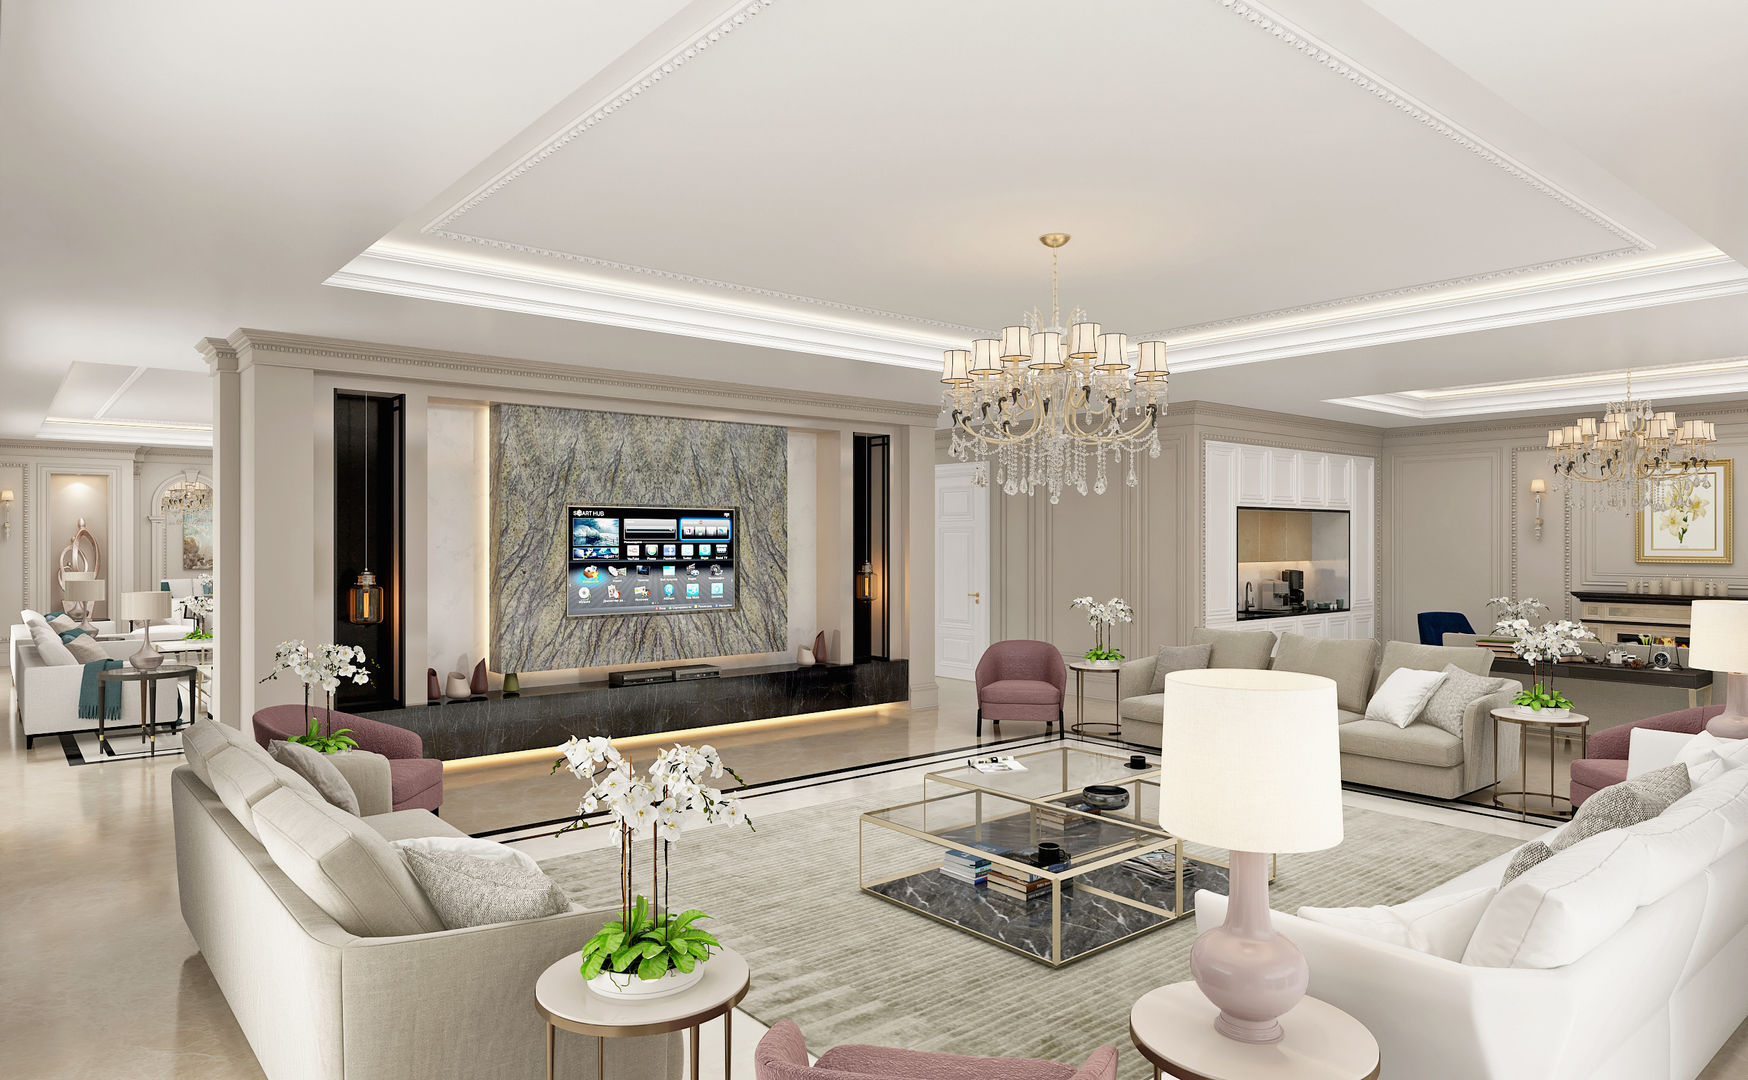 Living Room Sia Moore Archıtecture Interıor Desıgn Salas de estilo clásico